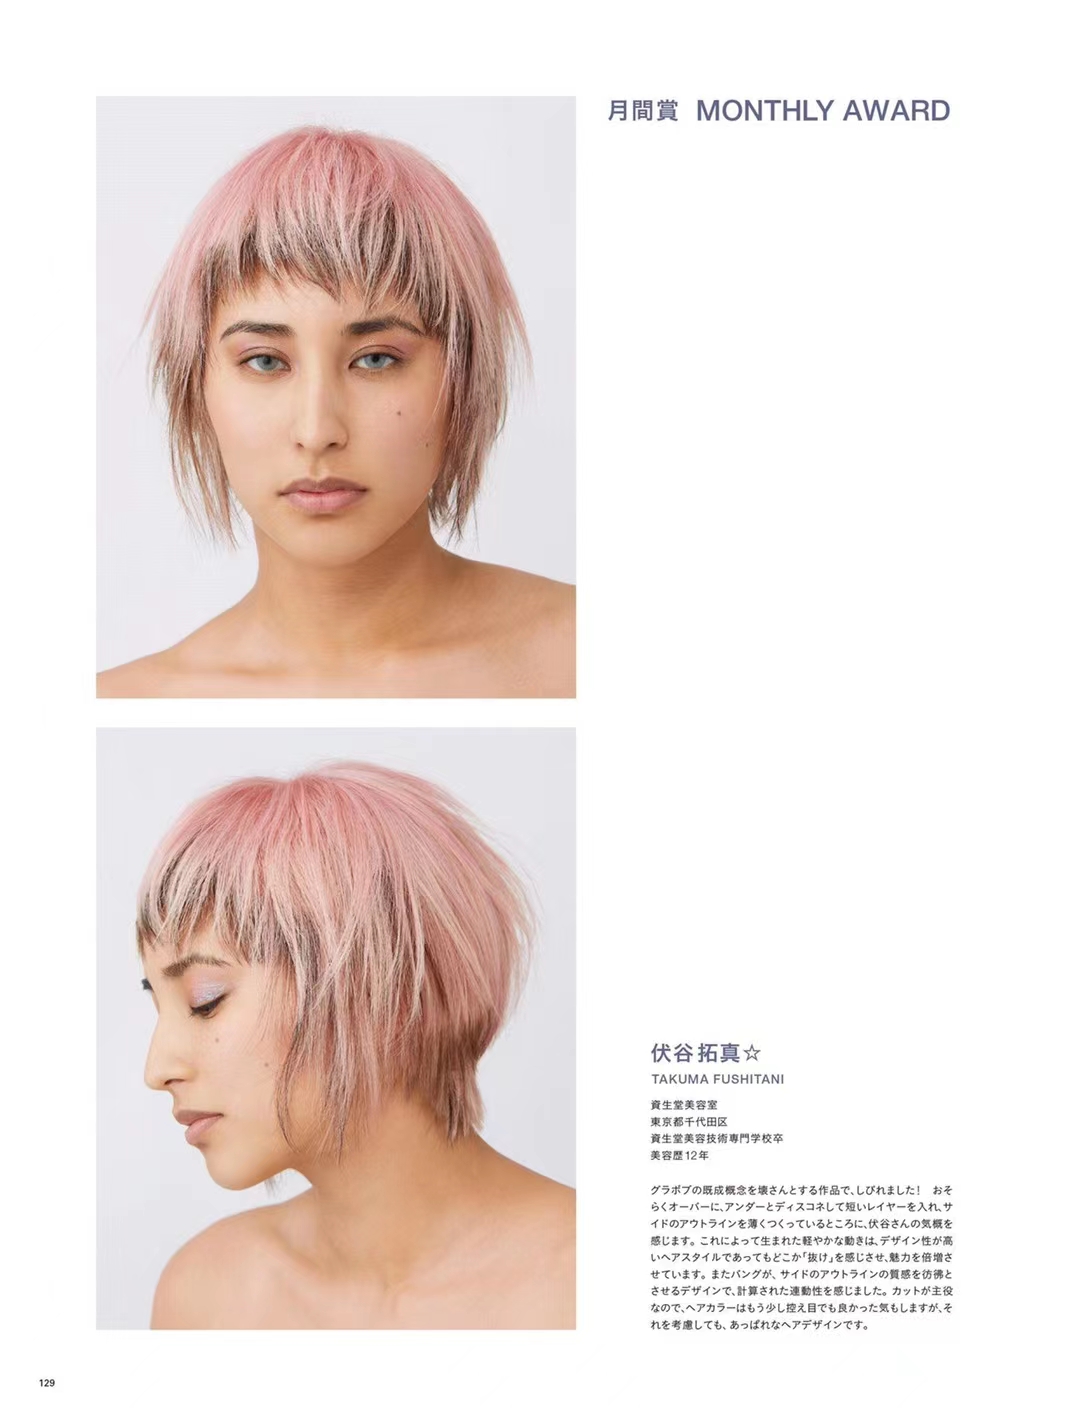 【瑜伽健身上新】【日本版】《HAIR MODE》 2021年11月日本时尚潮流男士女士美发杂志